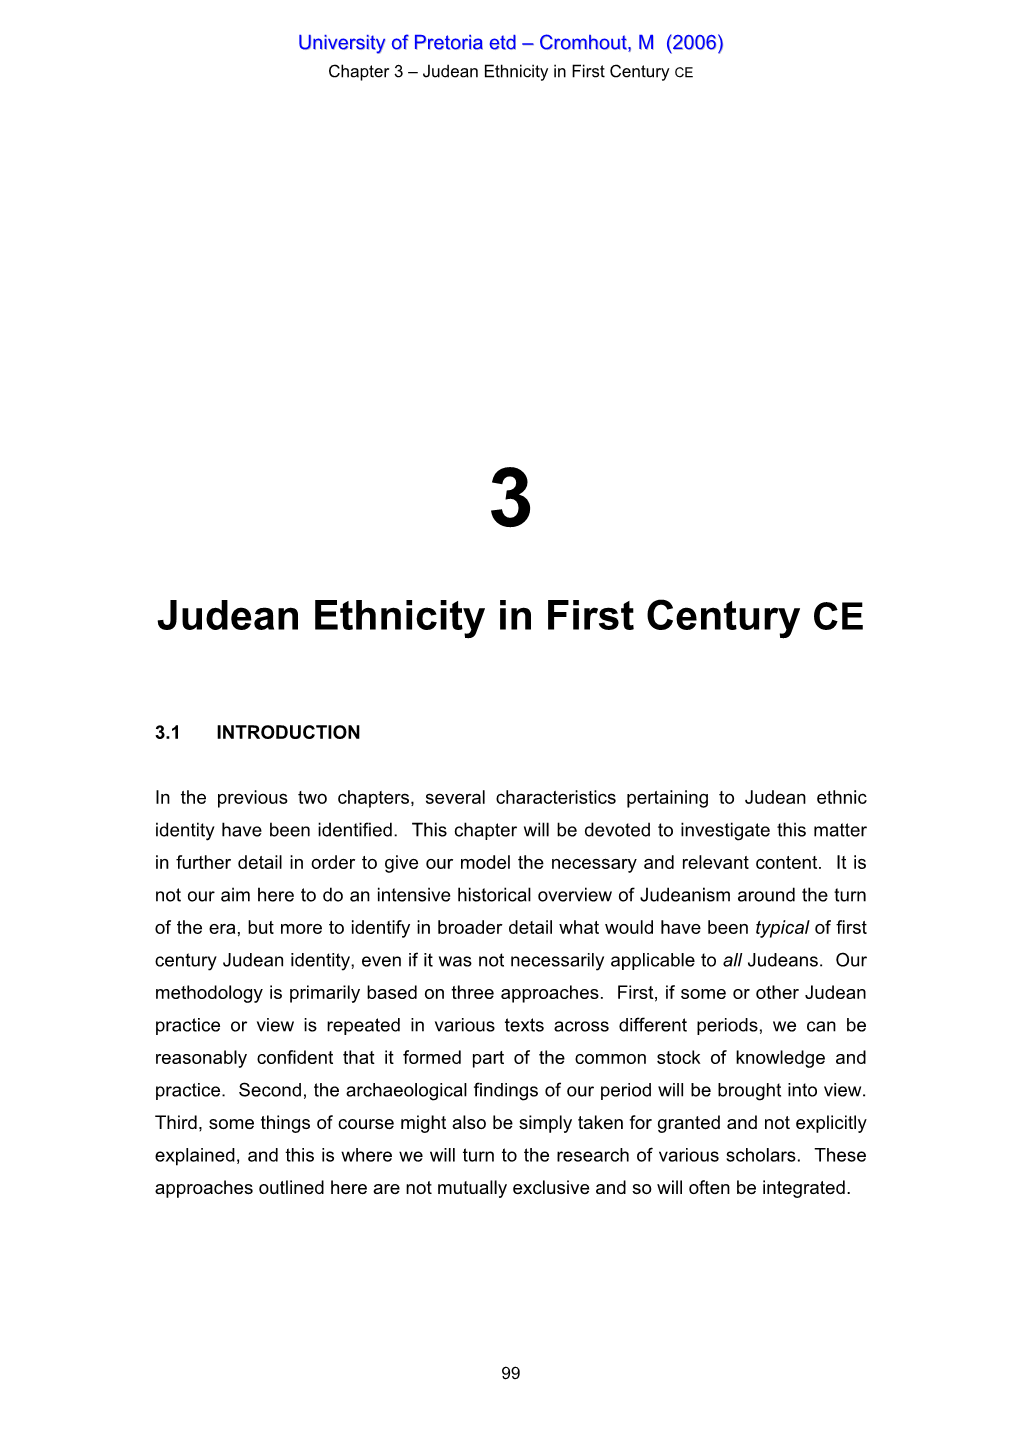 Judean Ethnicity in First Century CE